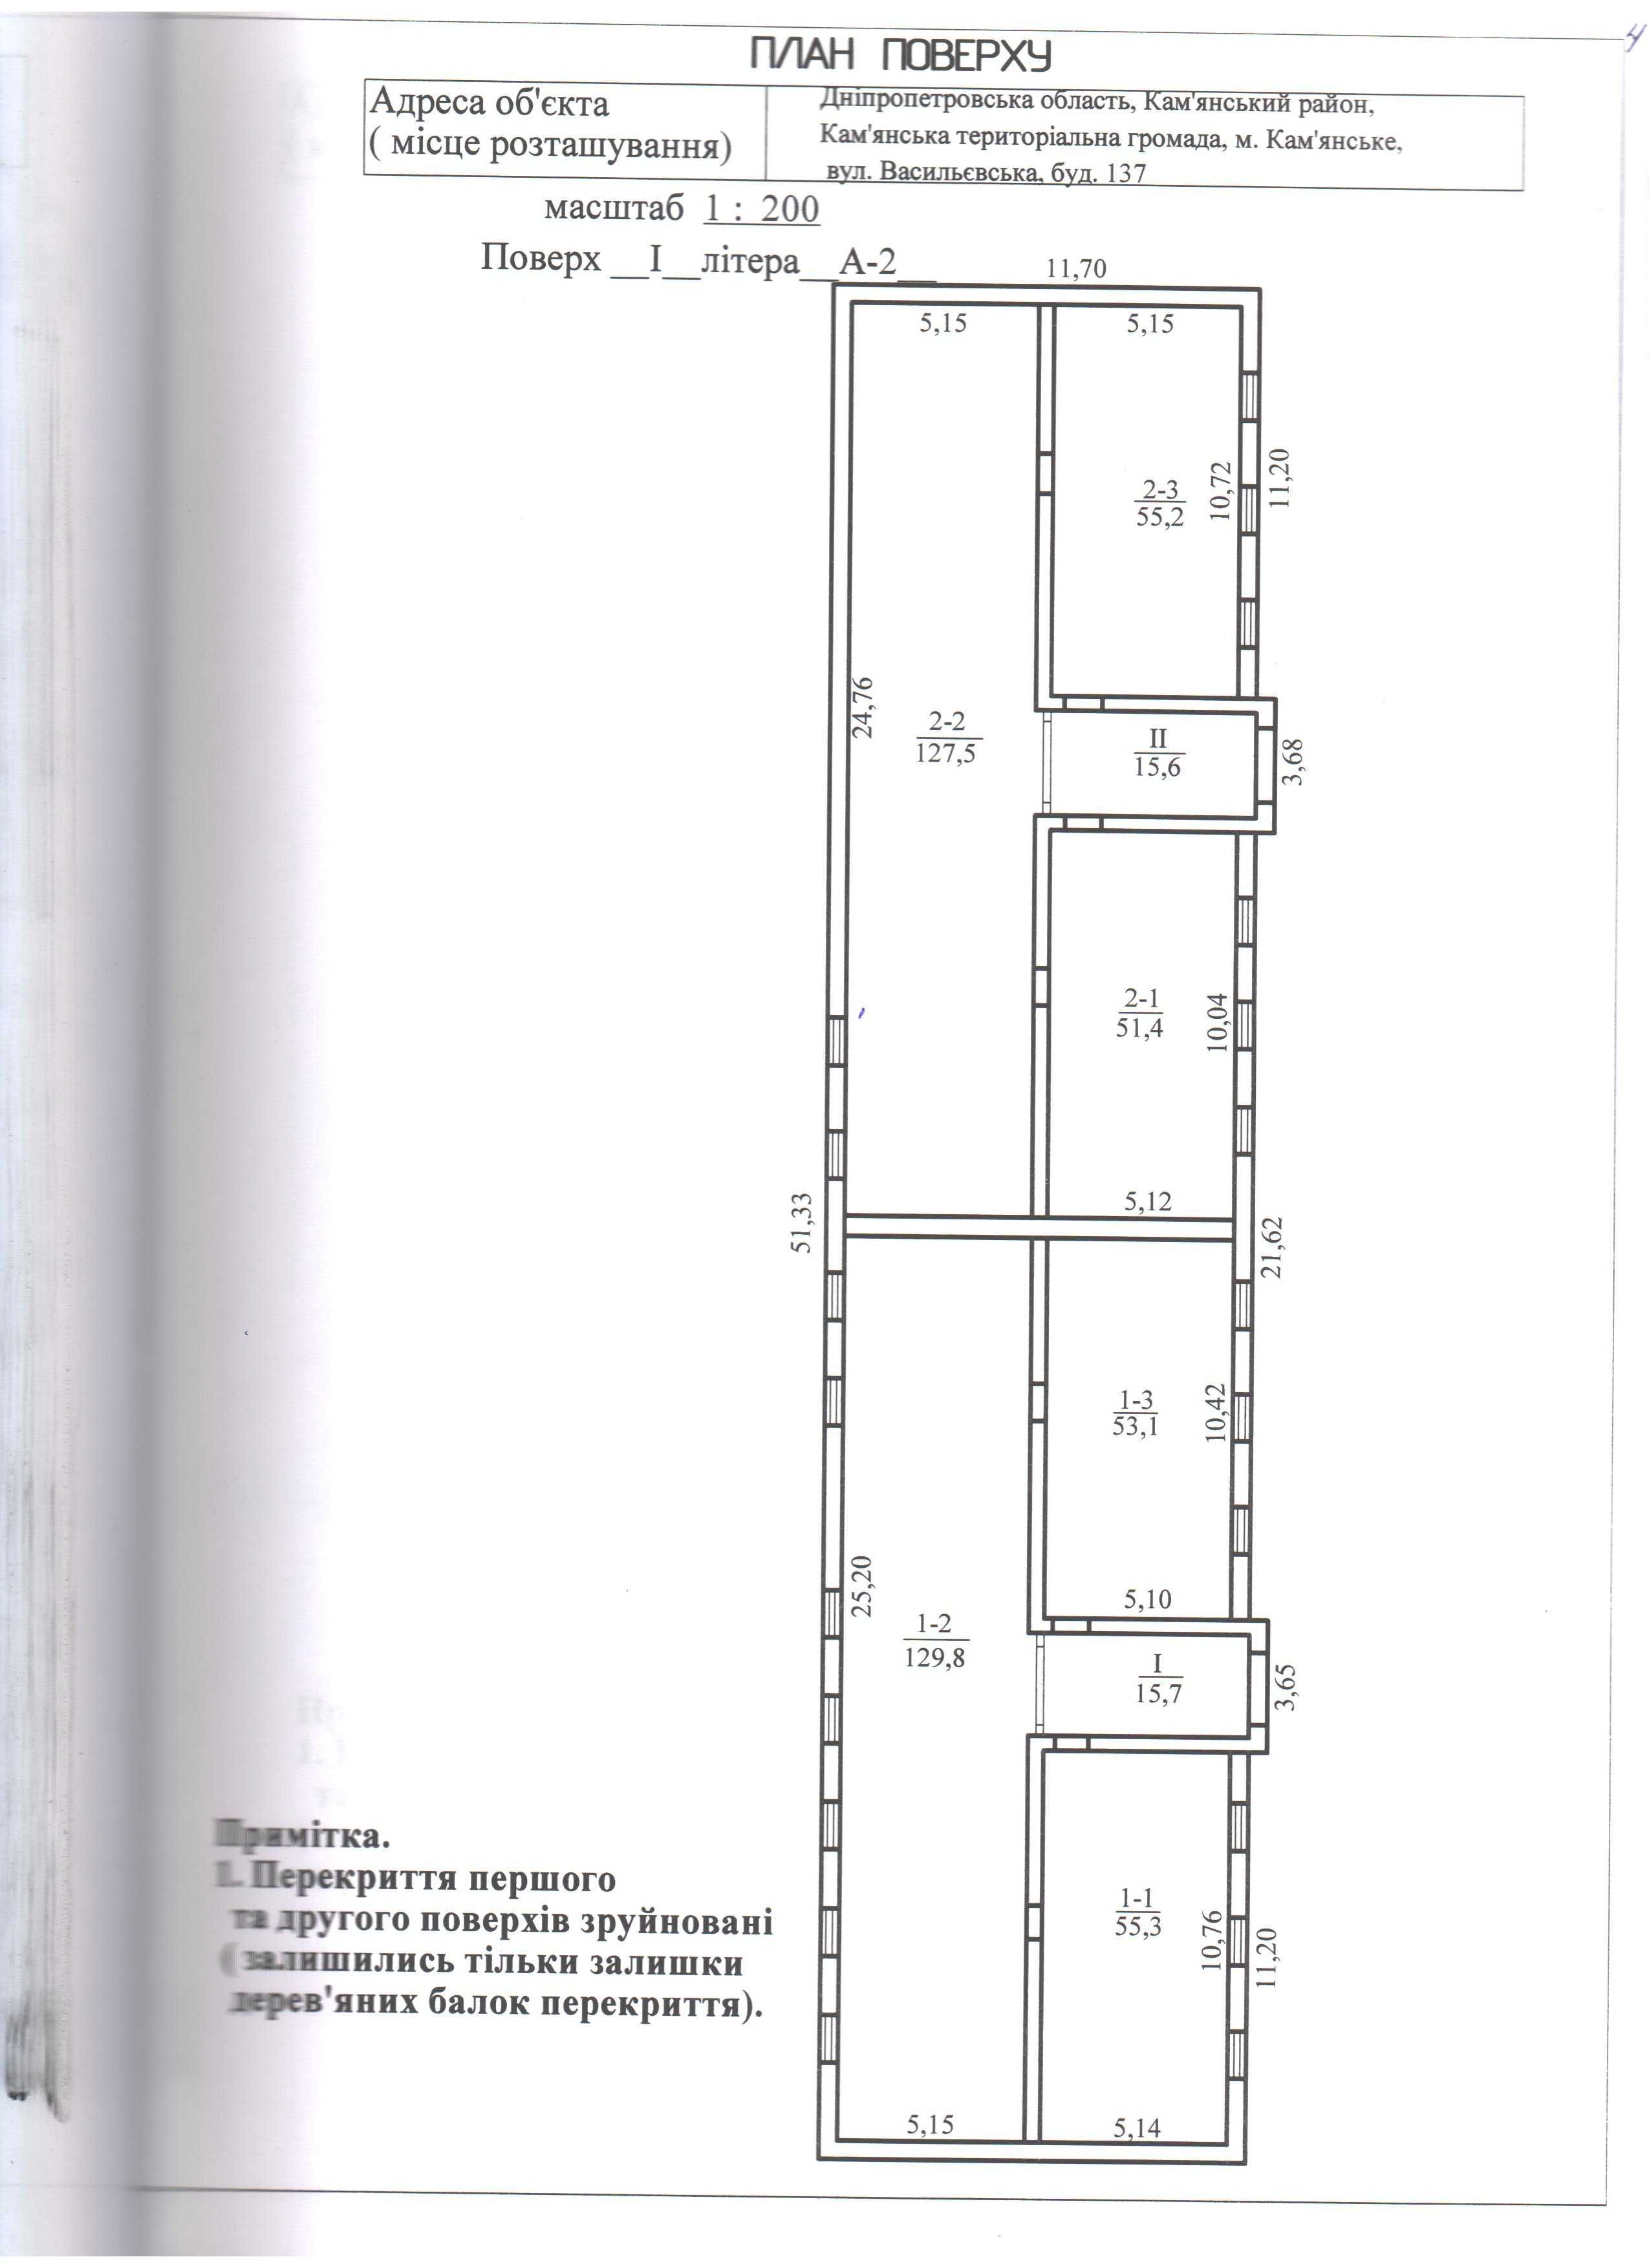 Будівля 503,6 м2, 0,1349 га, Кам'янське, вул.Васильєвська, 137